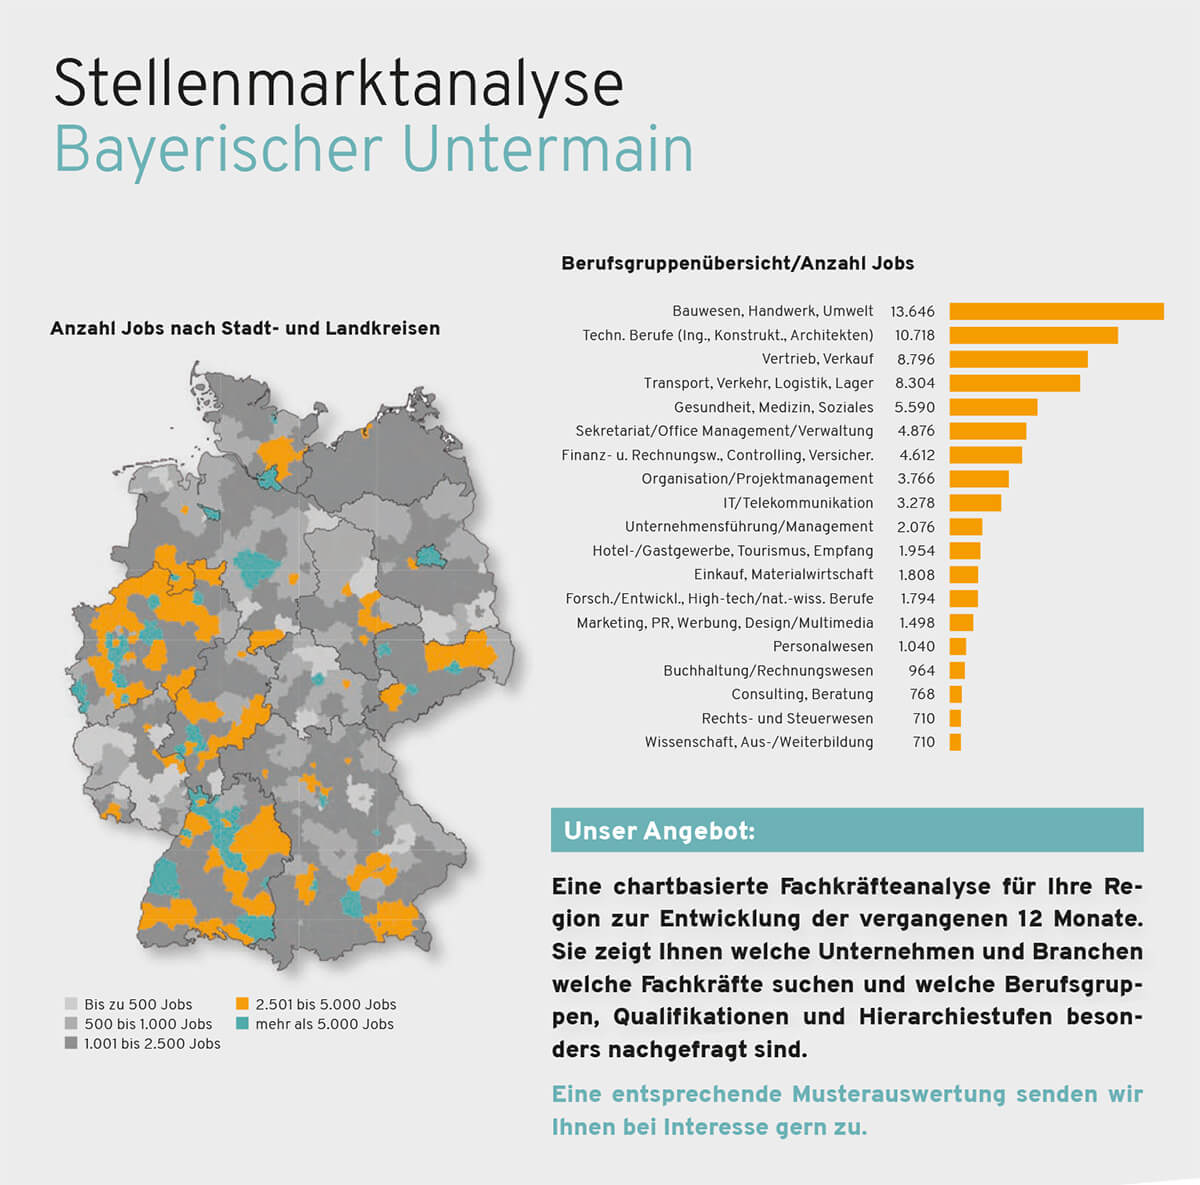 Balkendiagramm zeigt eine Stellenmarktanalyse für Region Bayerischer Untermain